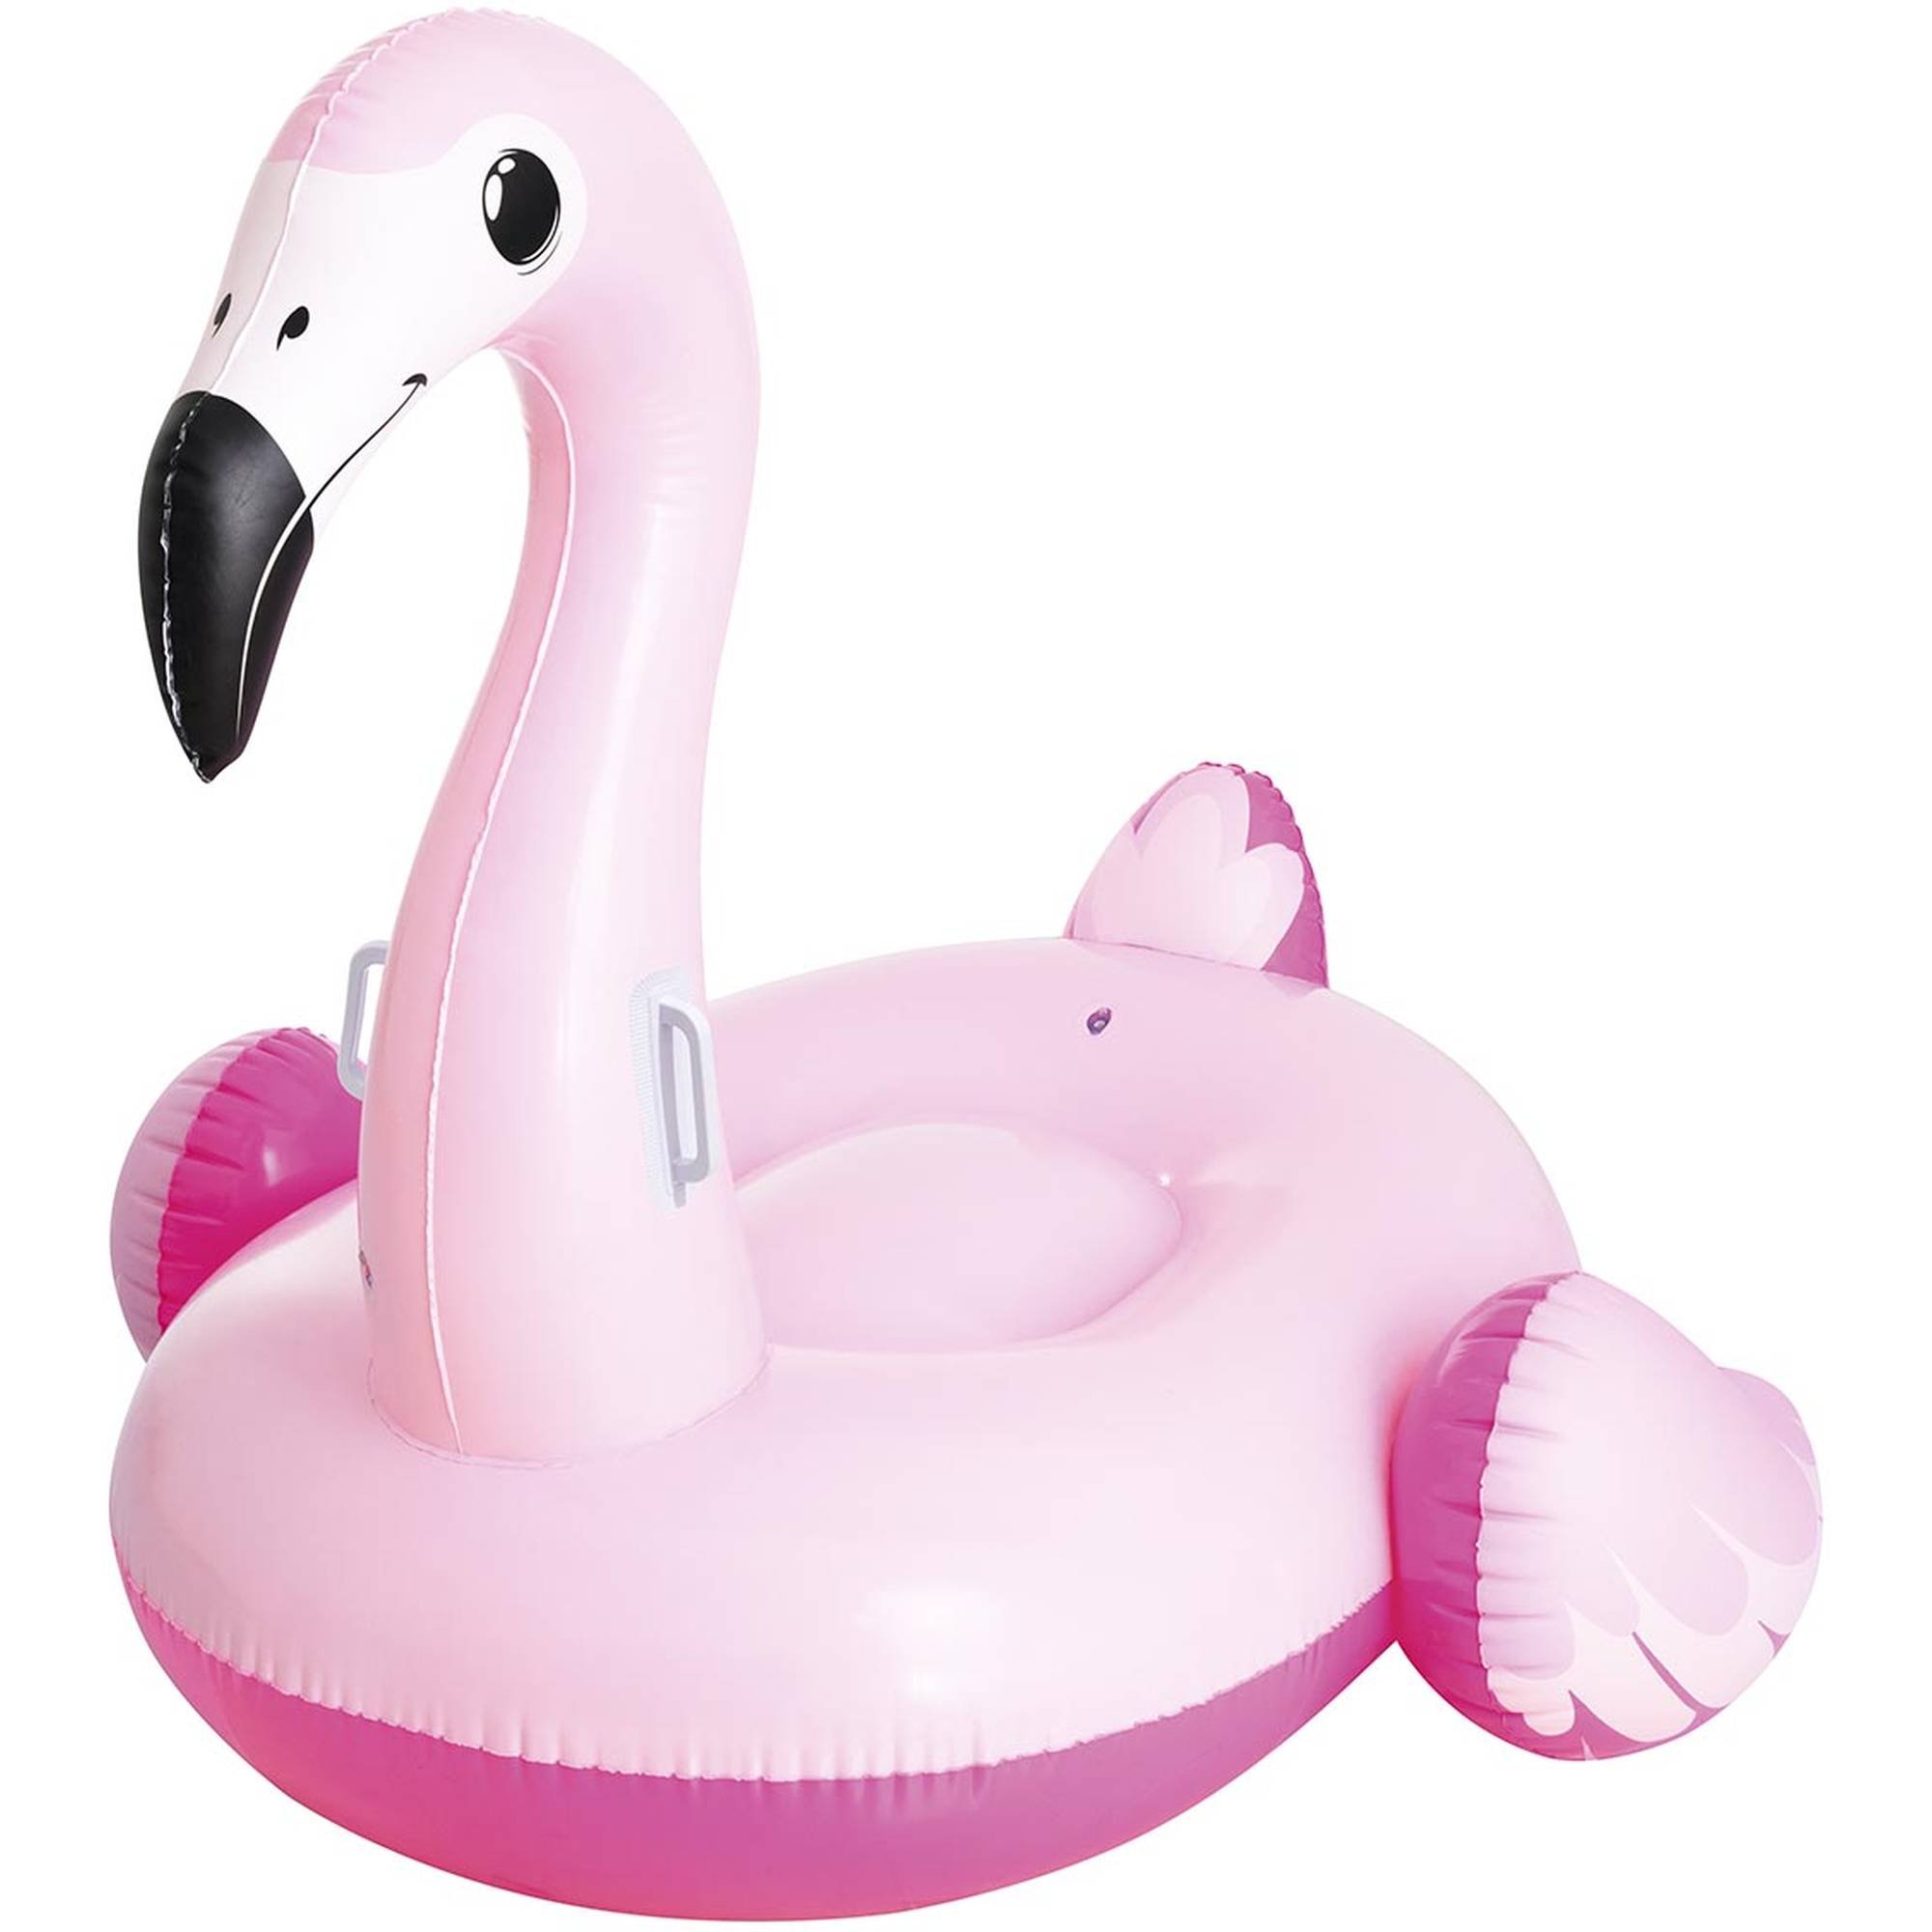 Bestway riesen Flamingo Schwimmtier 191x178 cm zum aufblasen